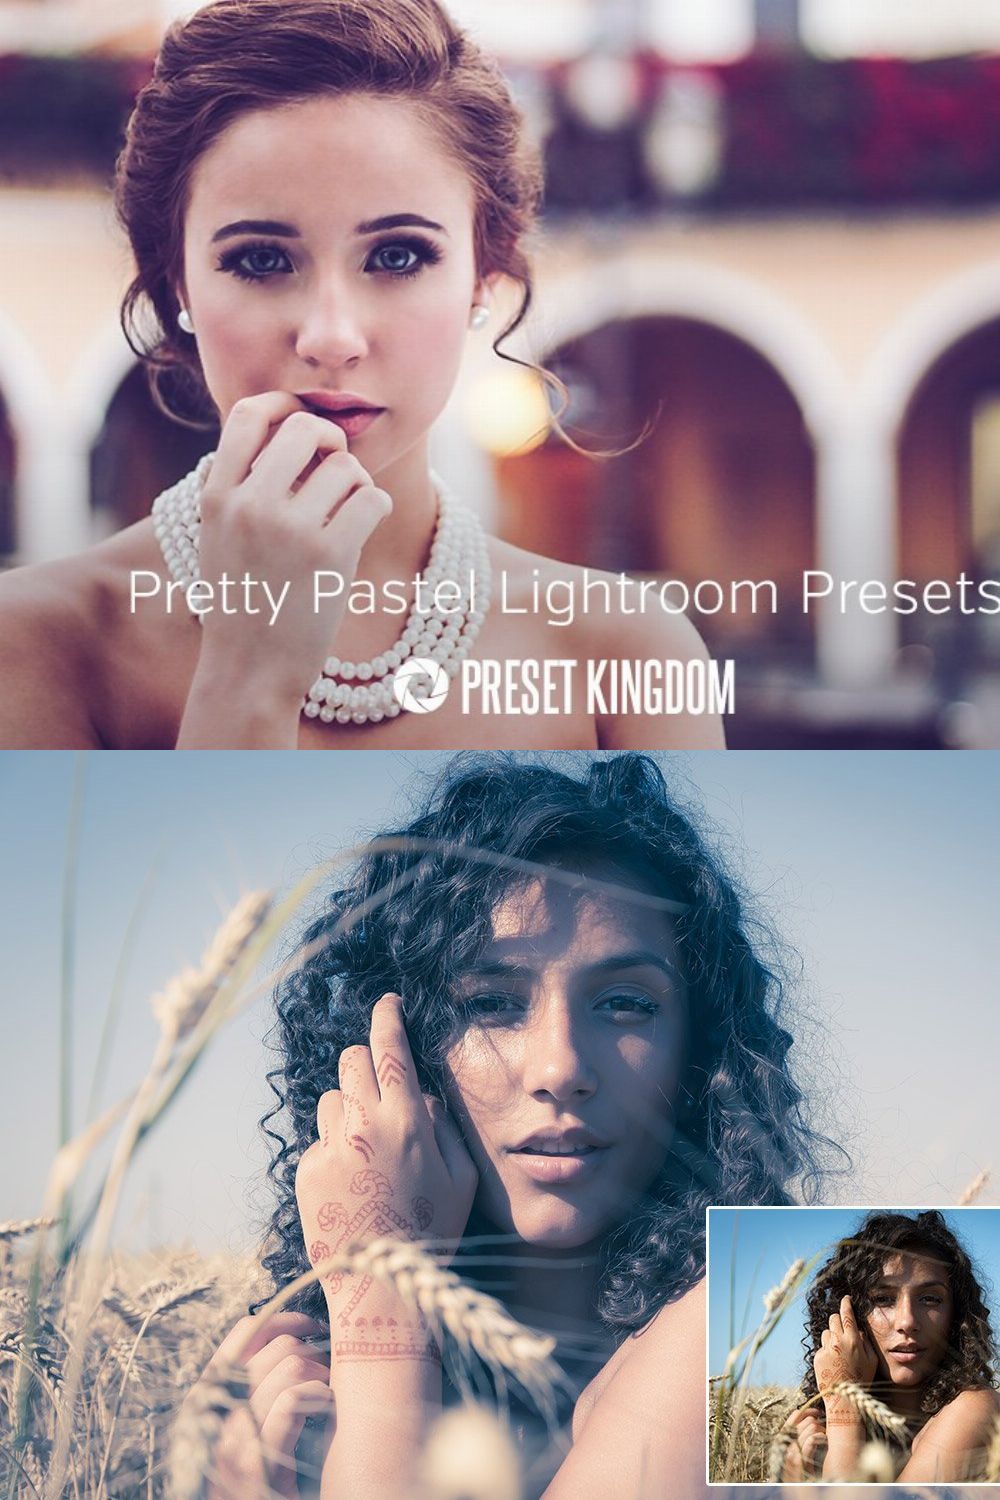 Pastel Lightroom Presets pinterest preview image.